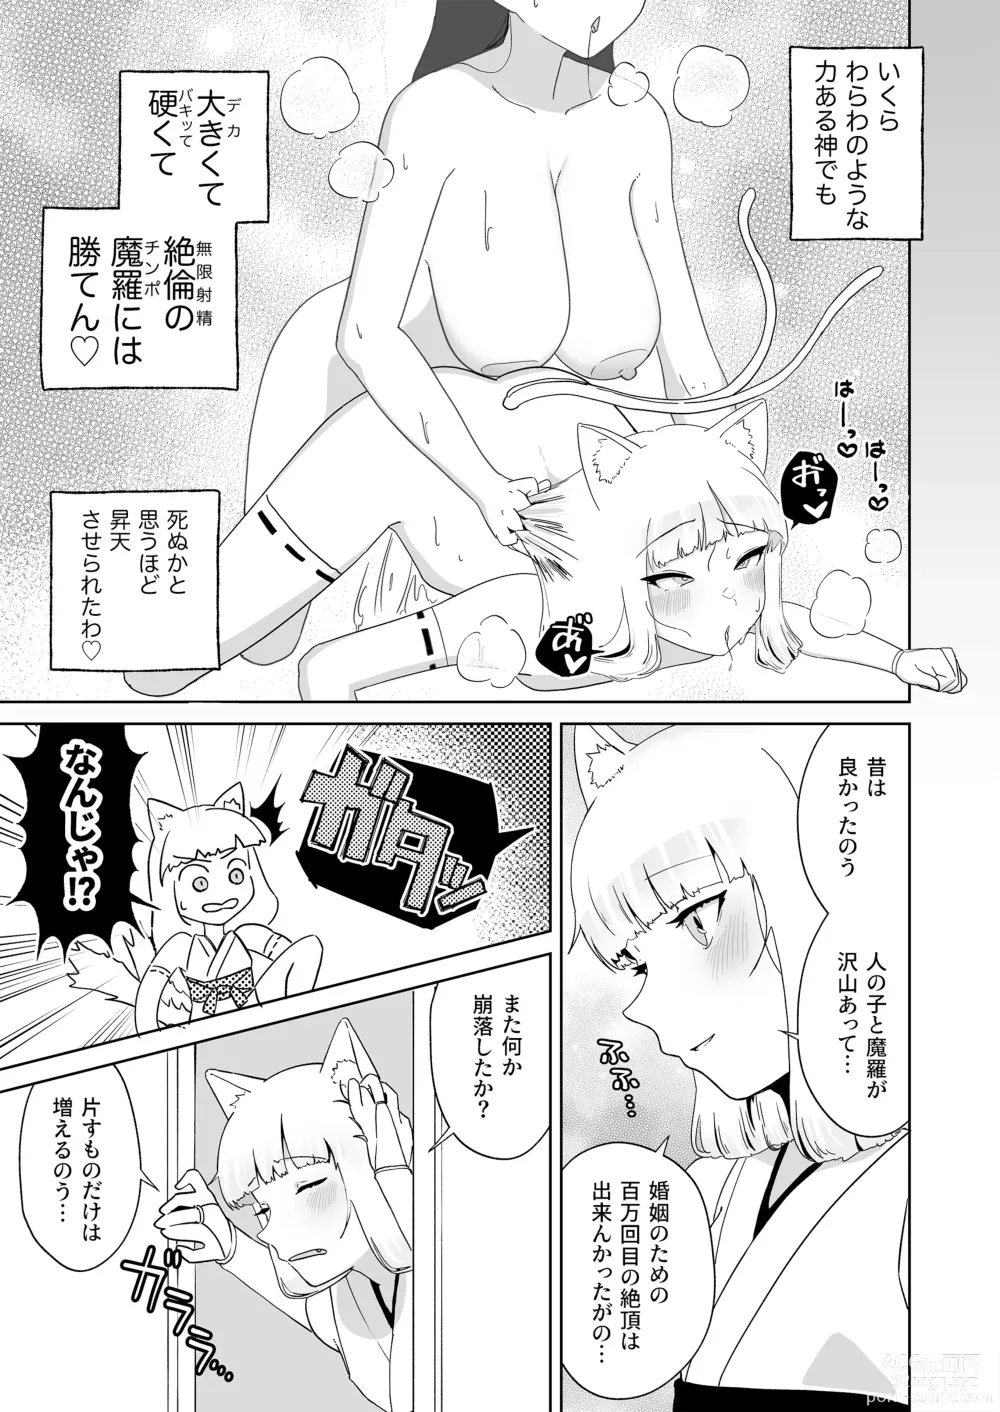 Page 4 of doujinshi Hyakuman Kaime no Acme de Kekkon shita Neko